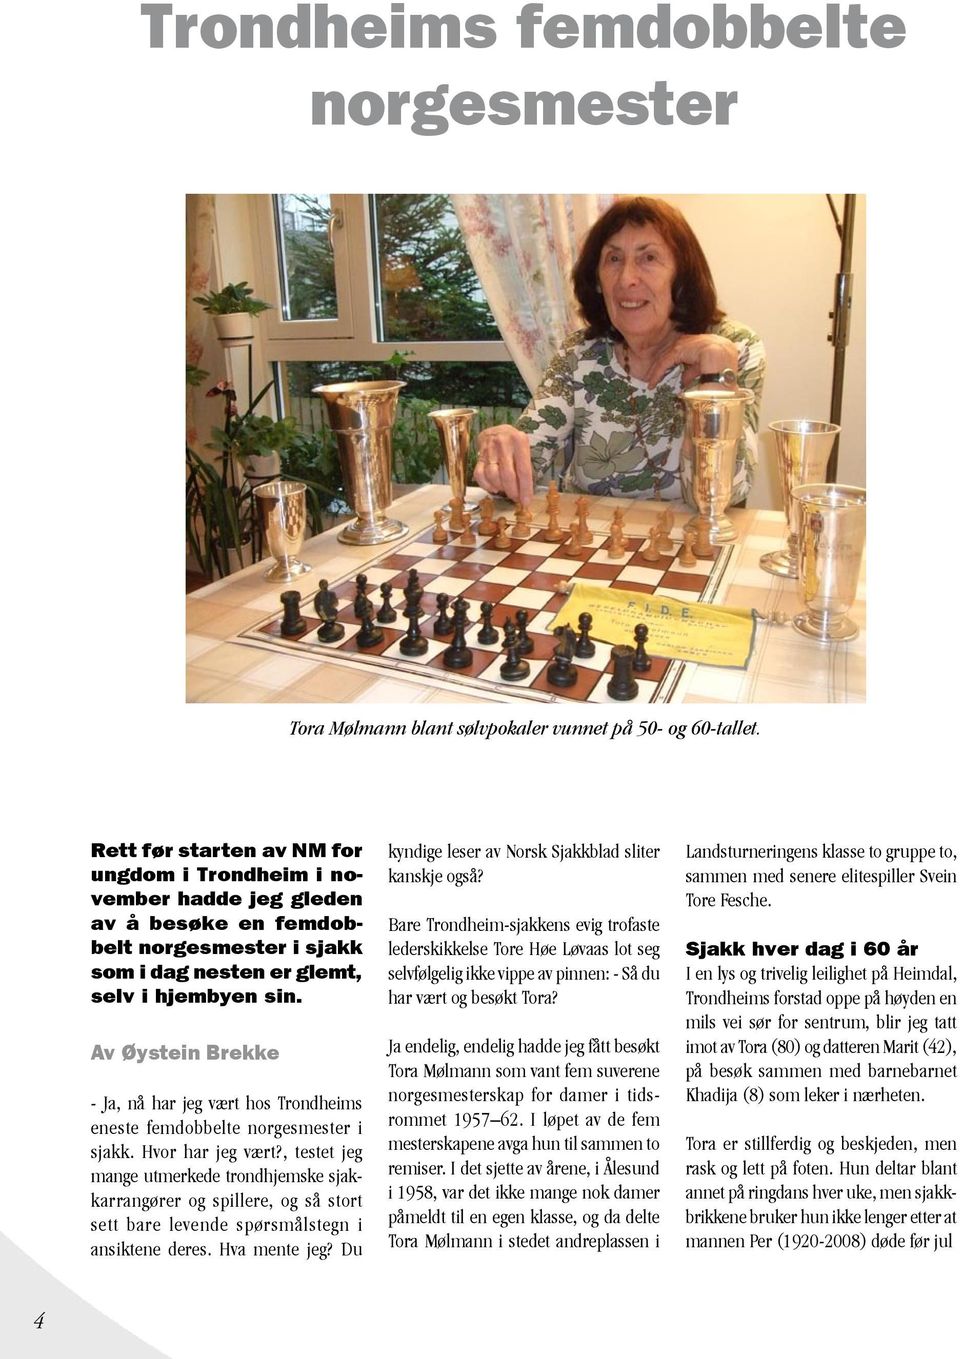 Av Øystein Brekke - Ja, nå har jeg vært hos Trondheims eneste femdobbelte norgesmester i sjakk. Hvor har jeg vært?